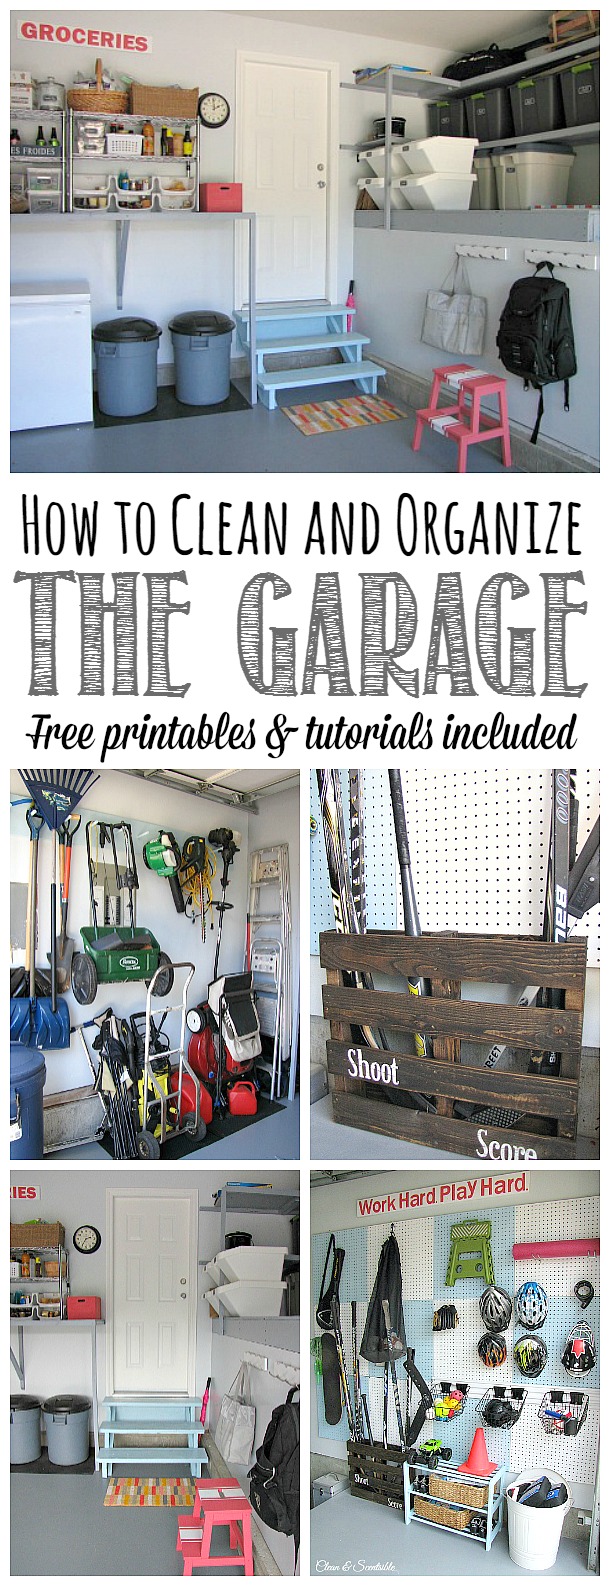 Alles was Sie brauchen, um Ihre Garage sauber und ordentlich zu machen! Jede Menge toller Ideen und Tutorials sowie kostenlose Ausdrucke, um Sie auf dem Laufenden zu halten. Teil der Diät der Haushaltsorganisation.